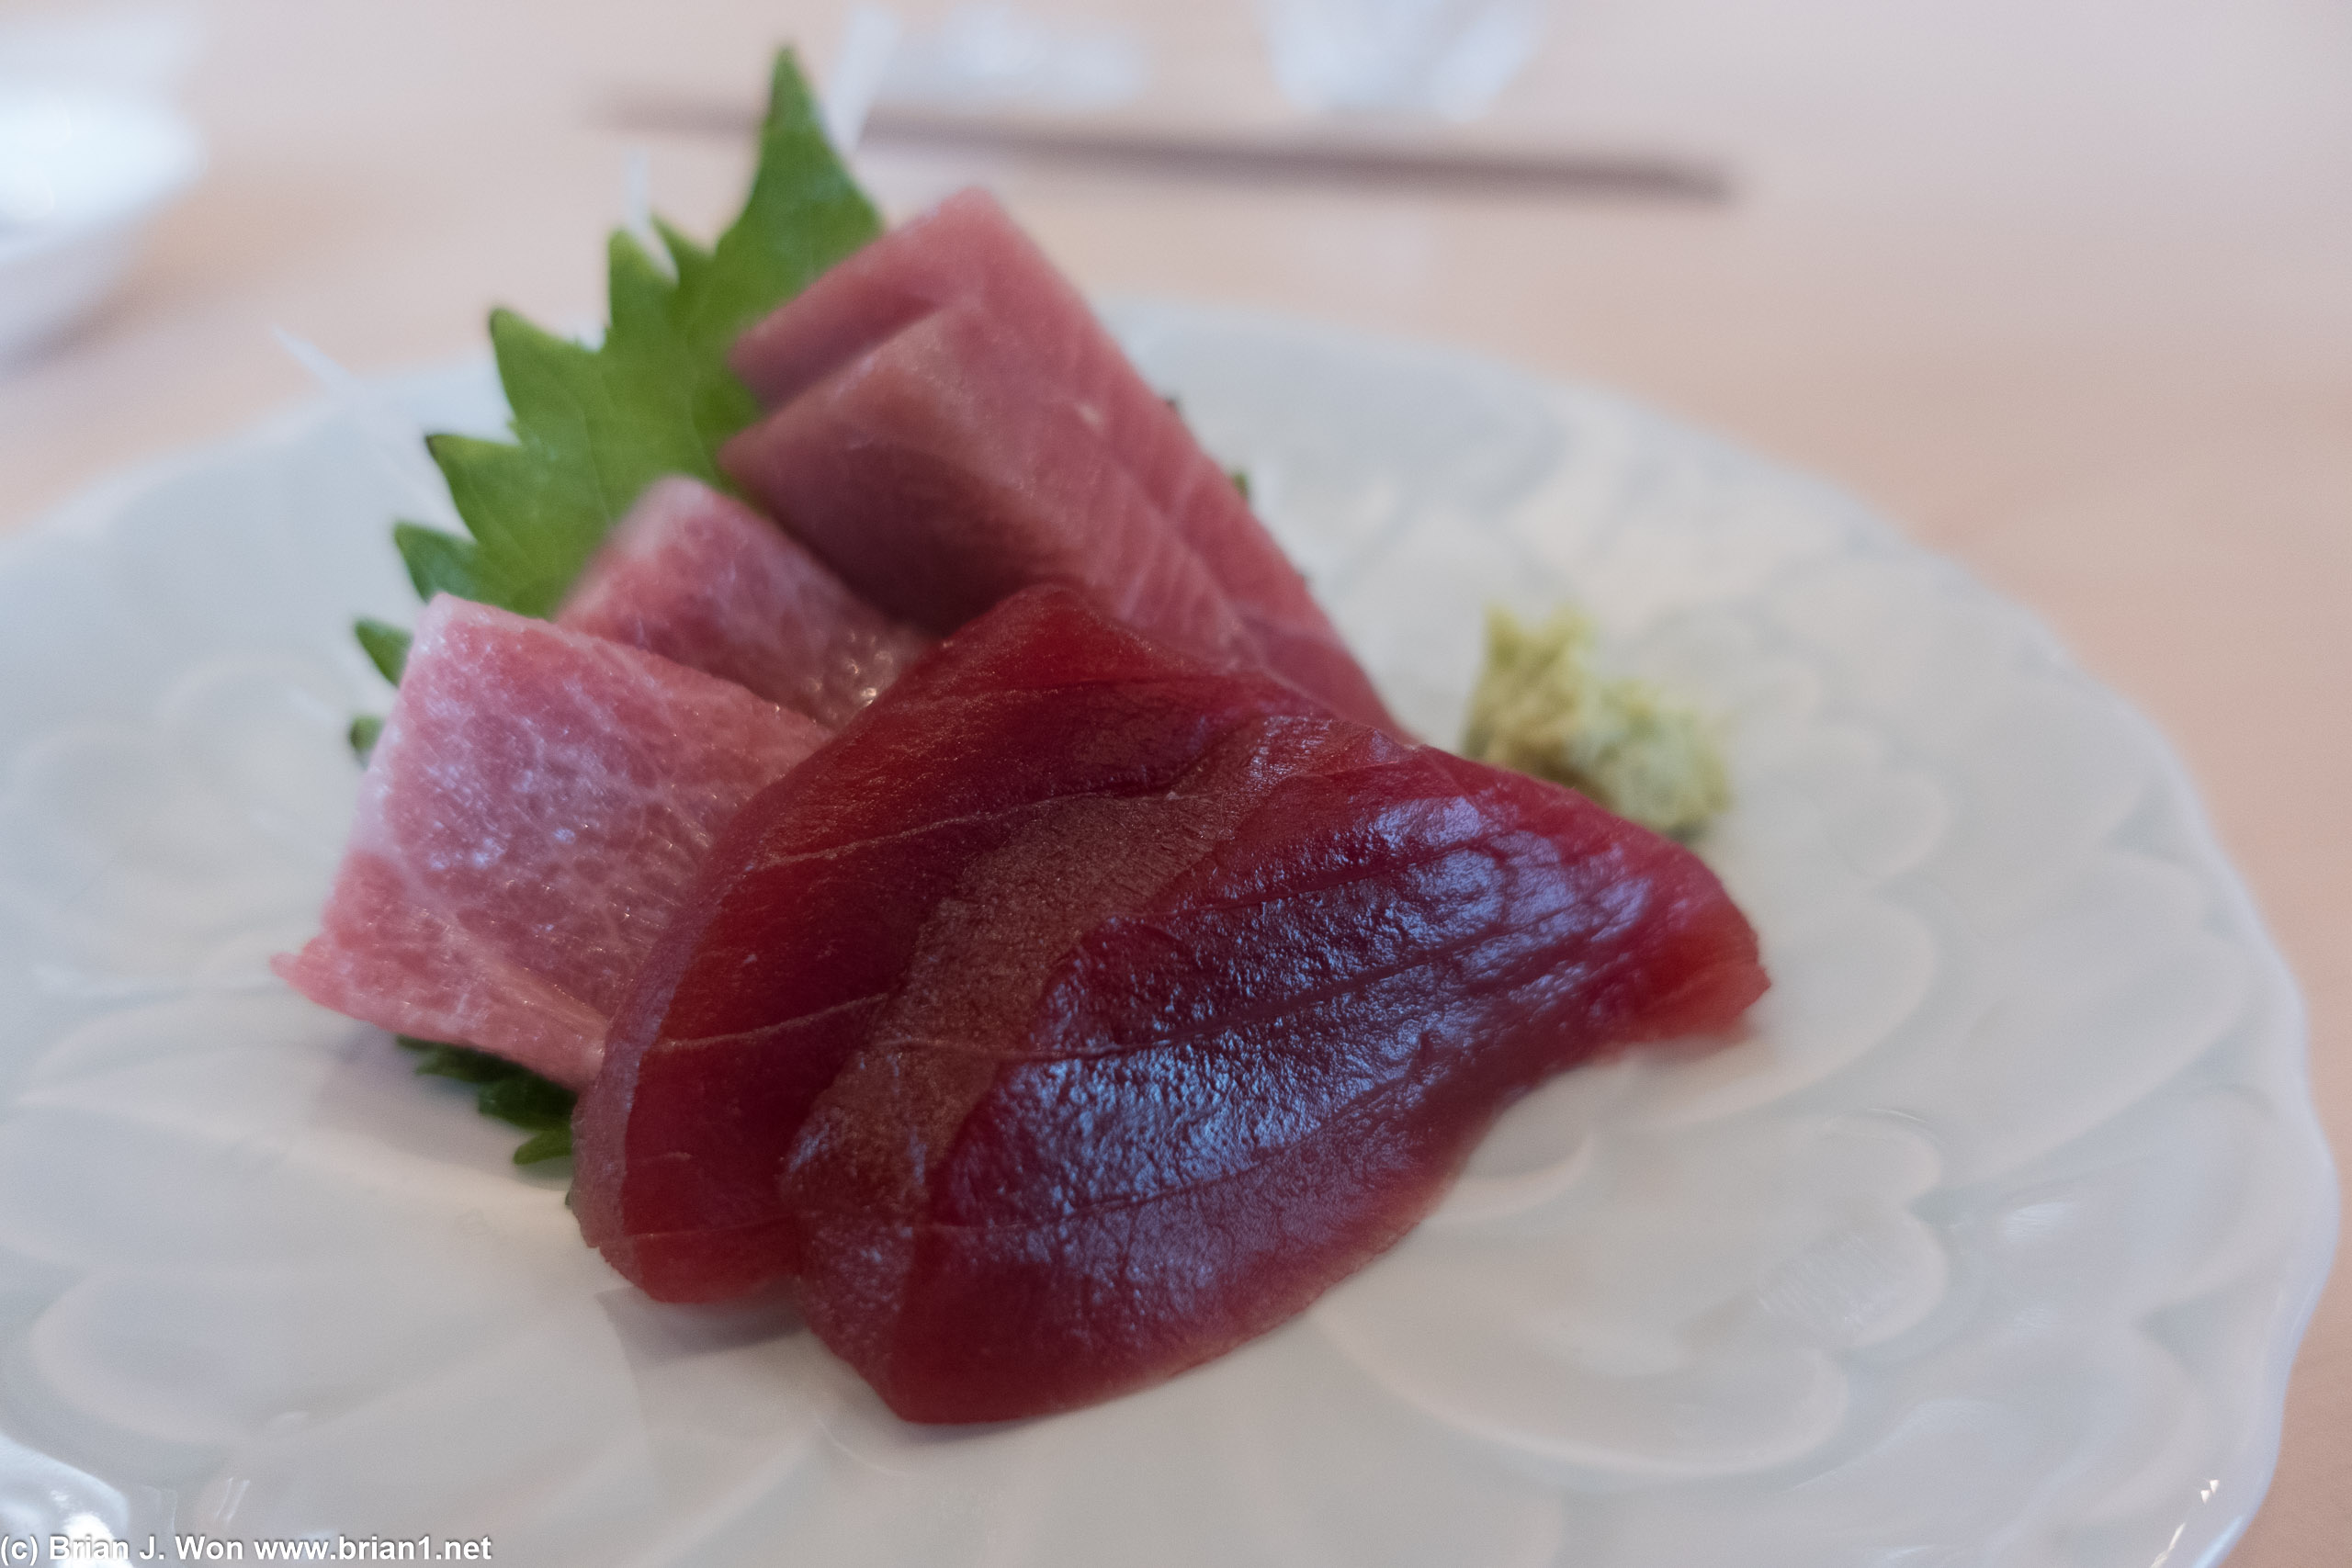 First course is 7 day dry aged sashimi, akami, chutoro, otoro.